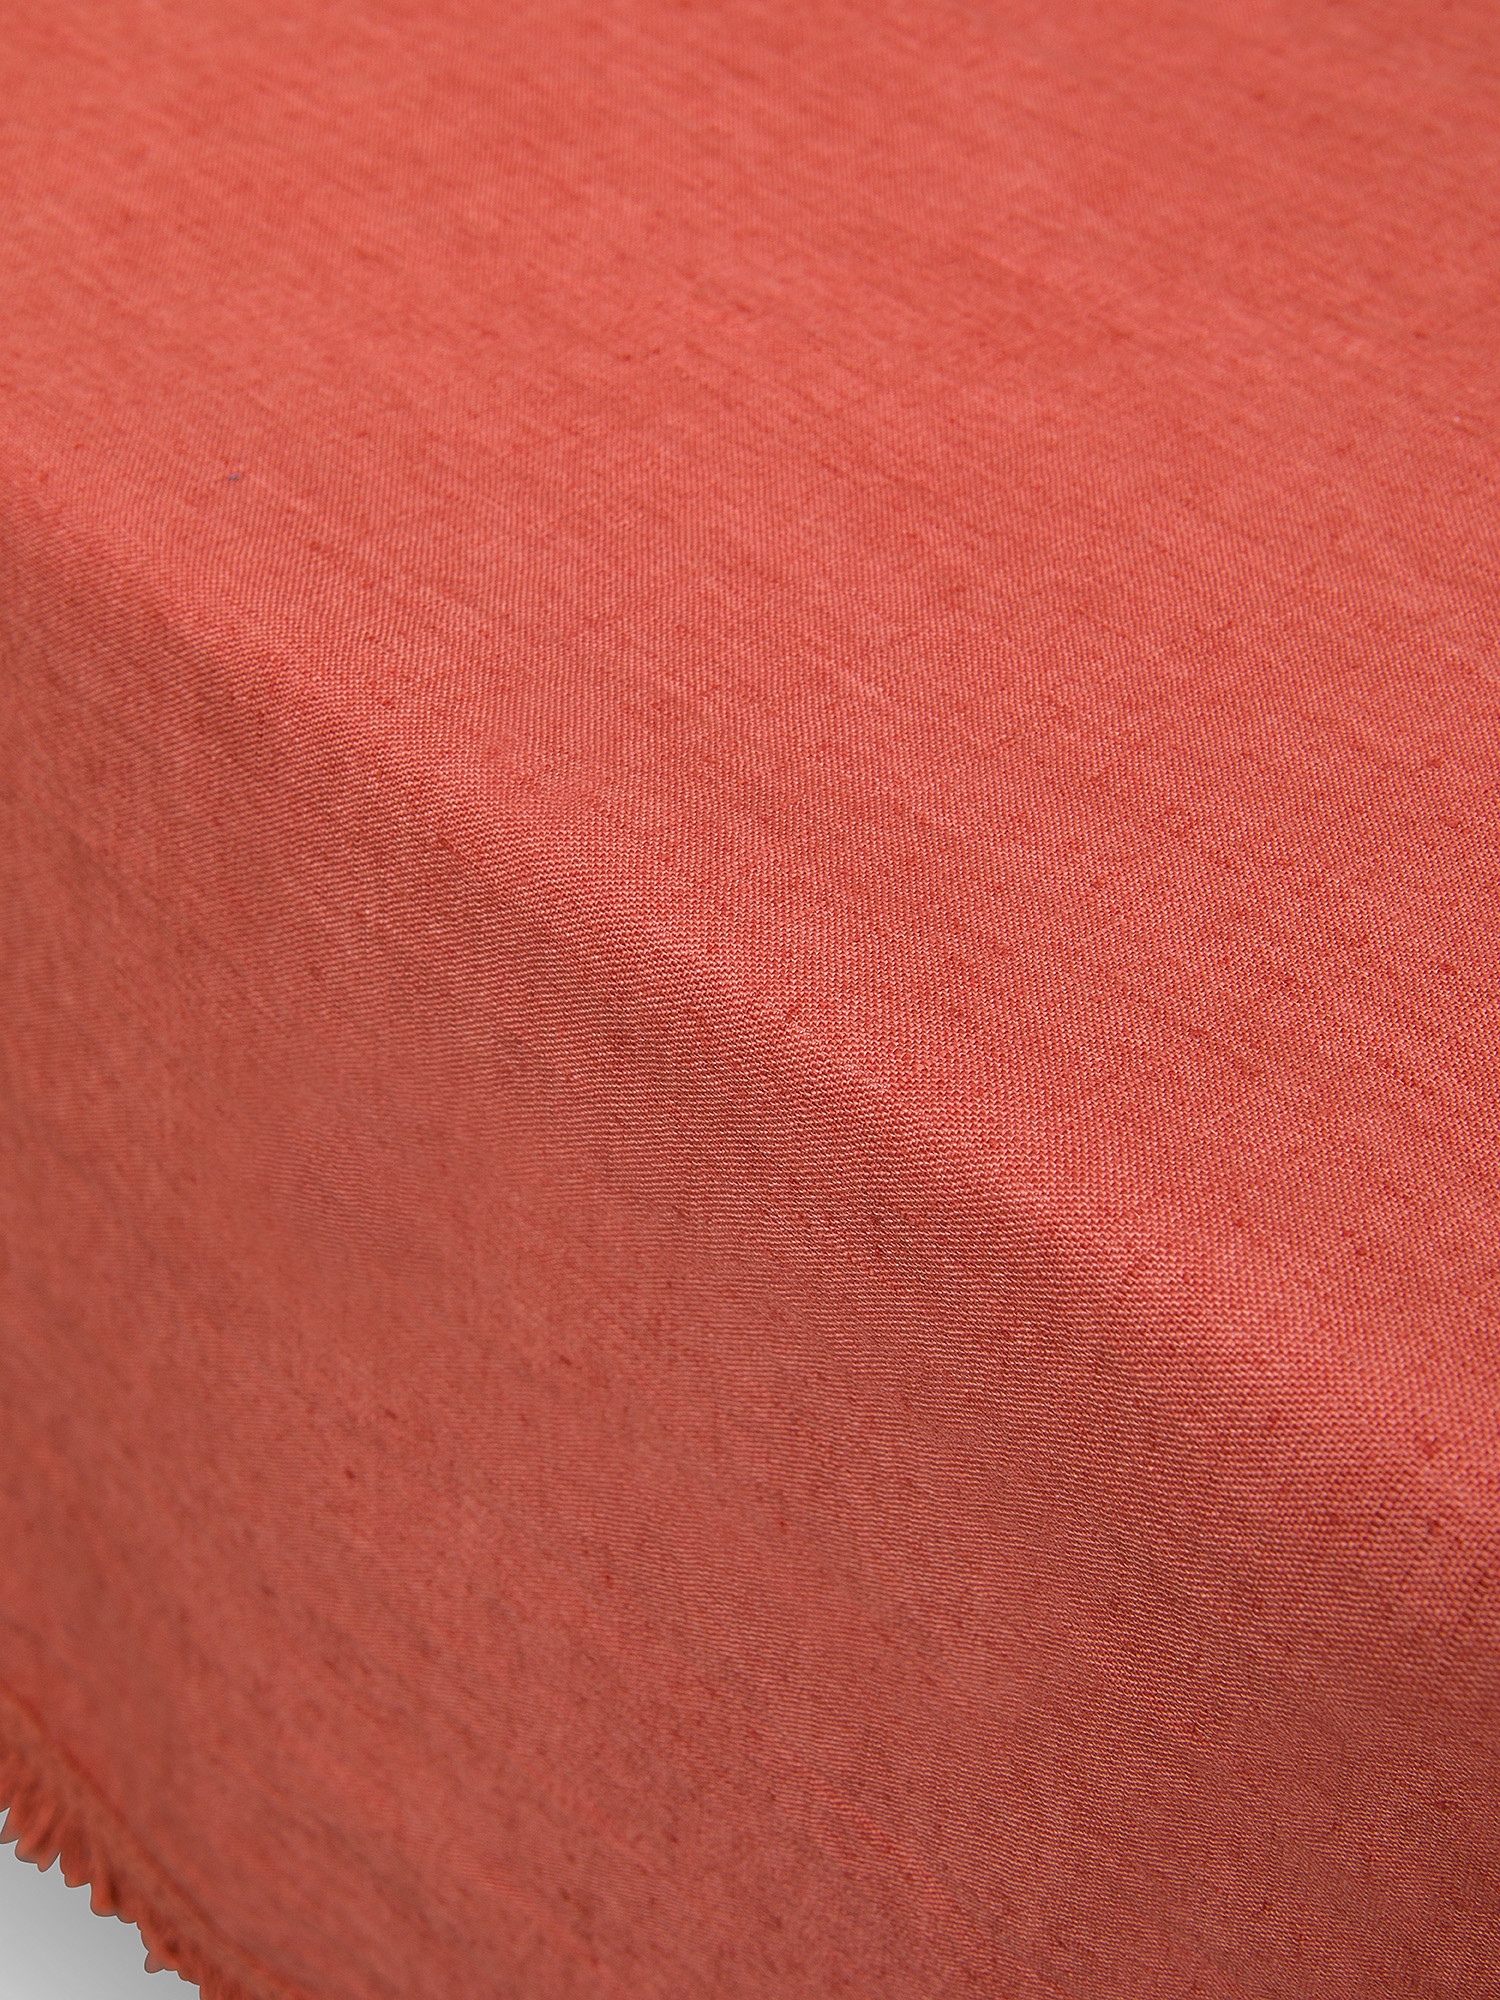 Tovaglia puro lino tinta unita con frangette, Rosso corallo, large image number 1